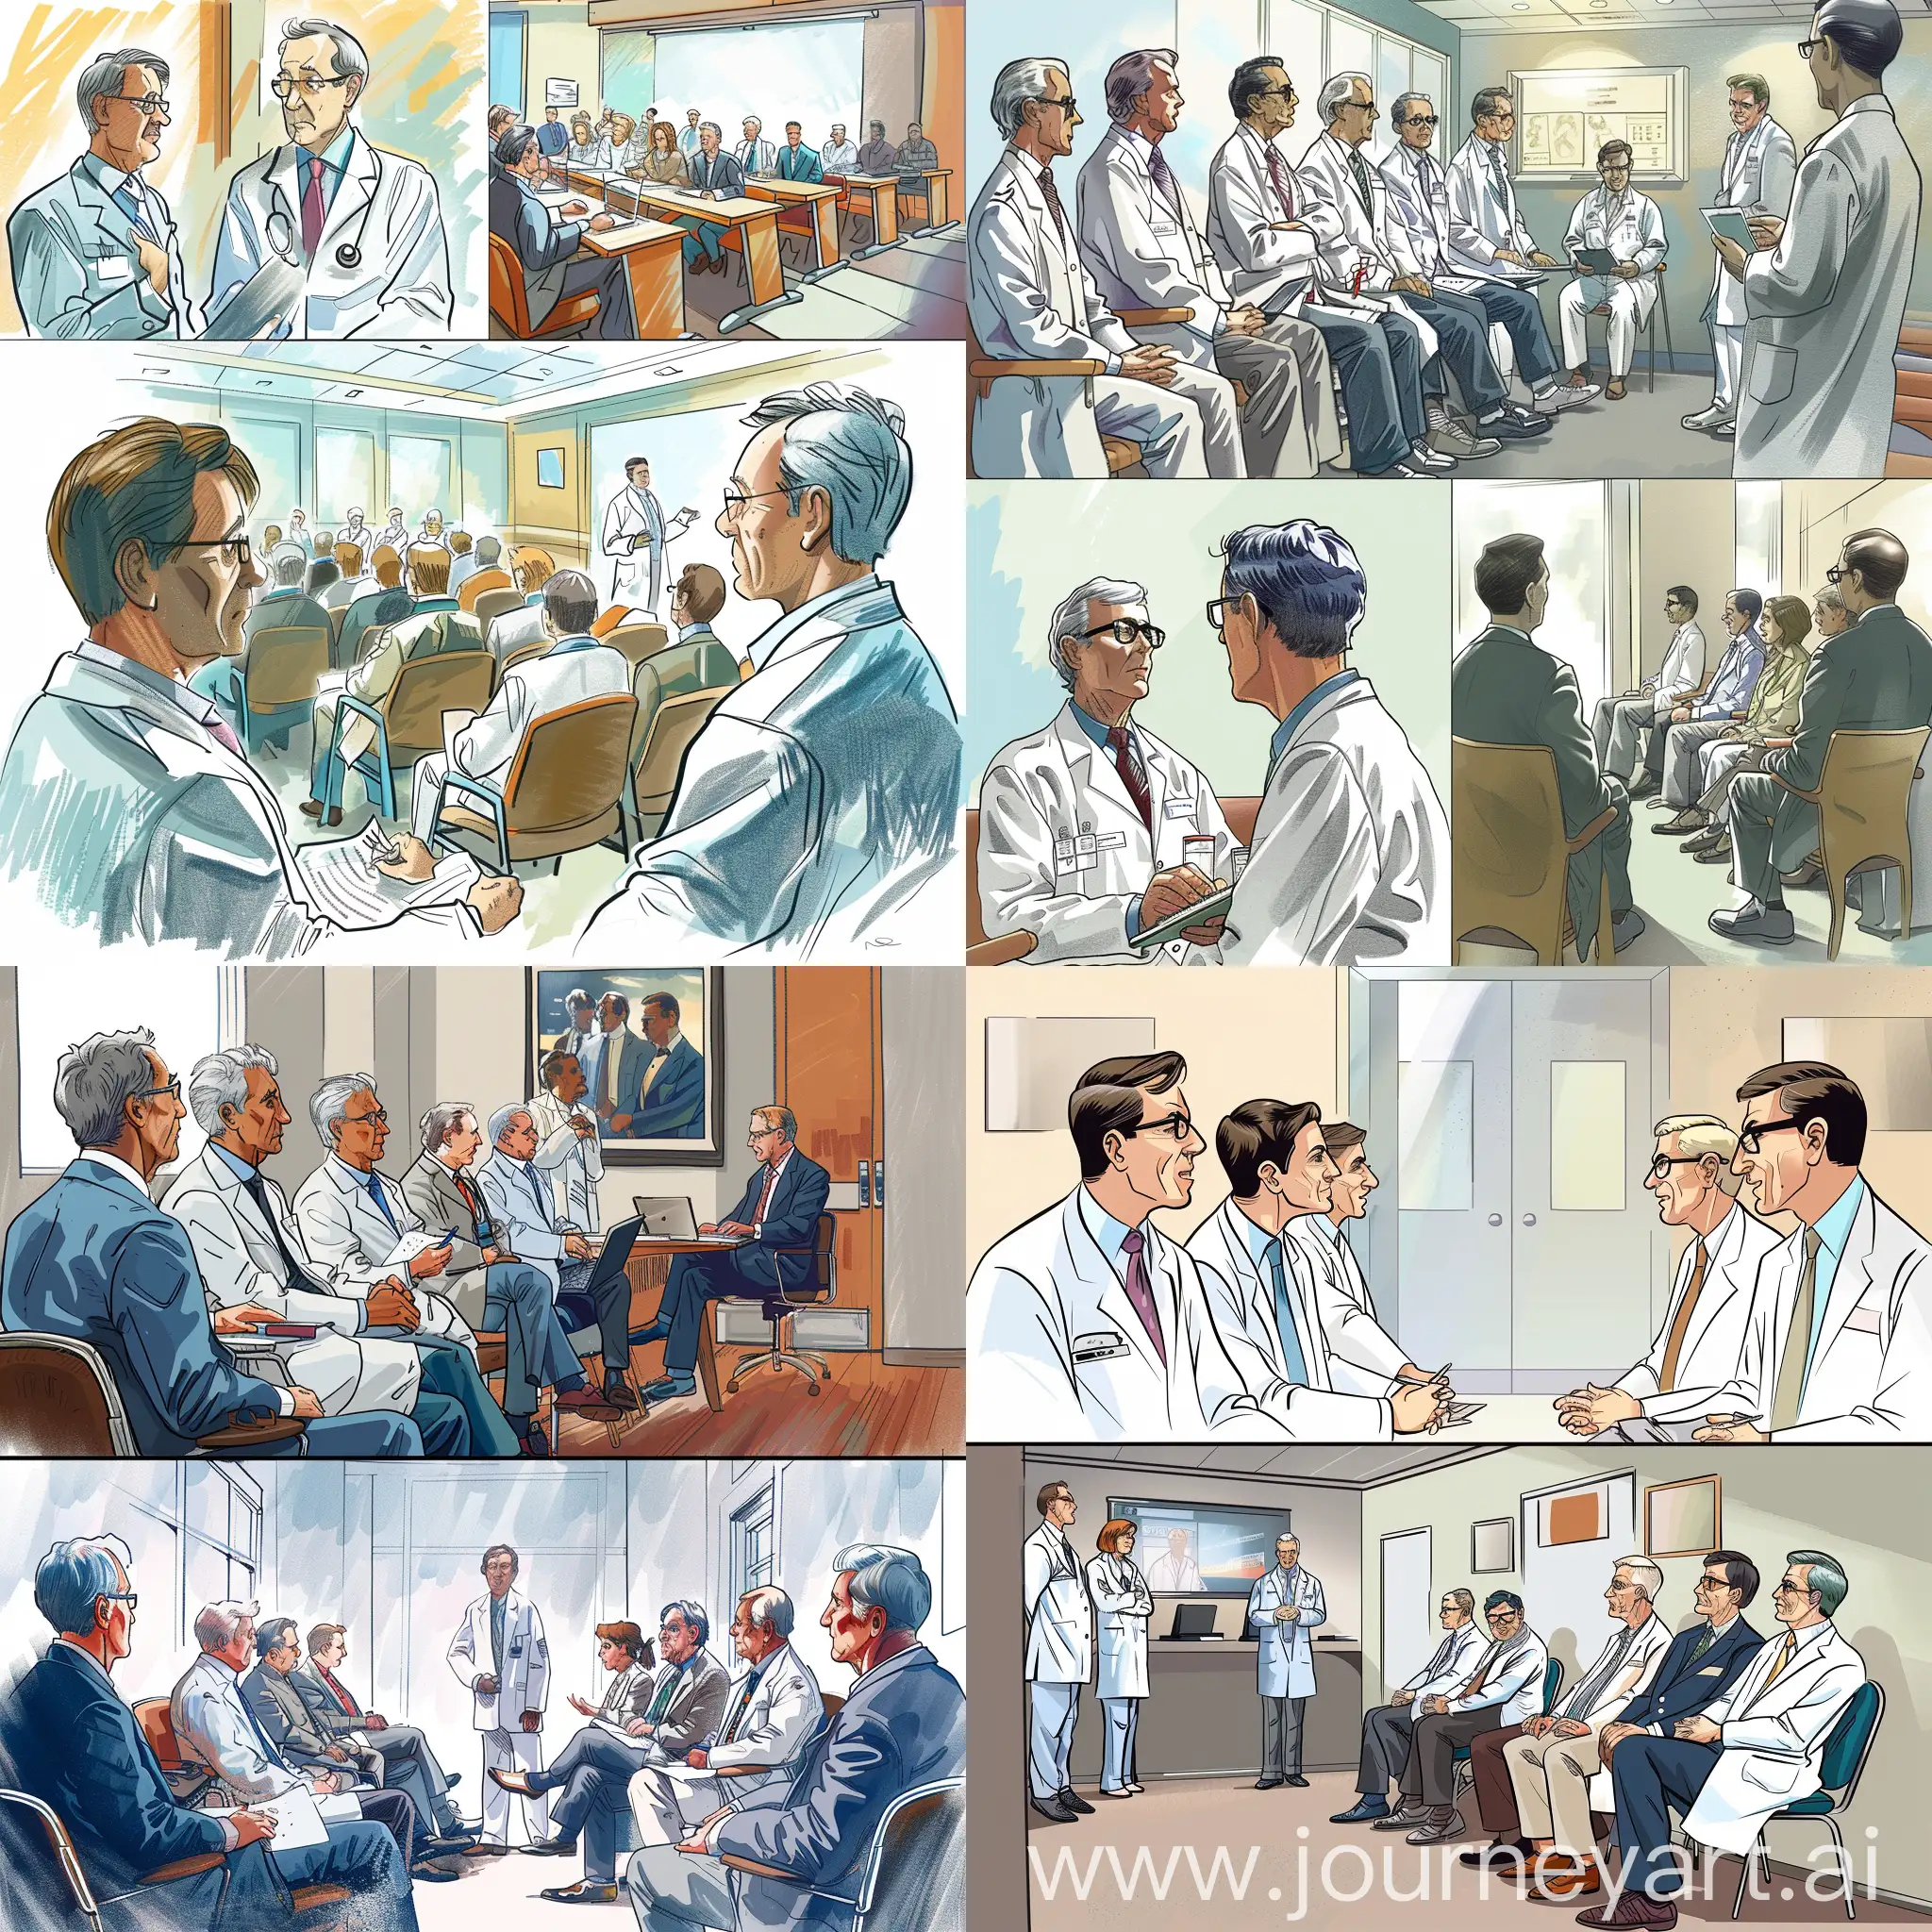 Нарисуй картинки про лор- врачей, которые находятся сначала в своем рабочем кабинетет, а потом собираются на конференцию оториноларингологии.  а потом сидят в зале и слушают своих коллег. 